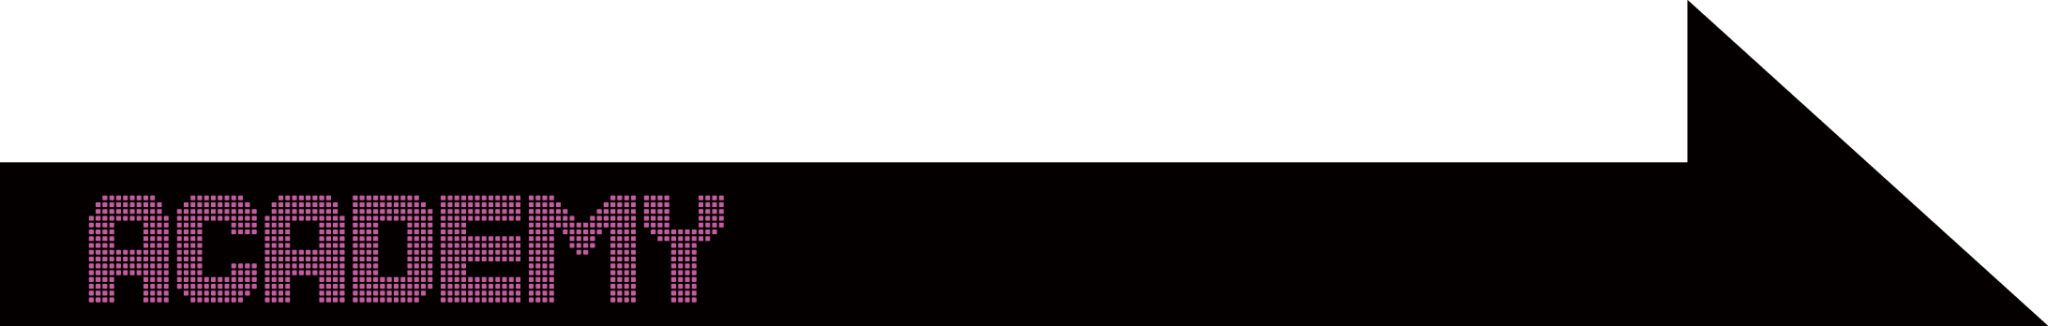 横浜上大岡発の新感覚のデジタルコミュニティー施設【プロモーションデザイン動画『e-VERSE(イーバース )』